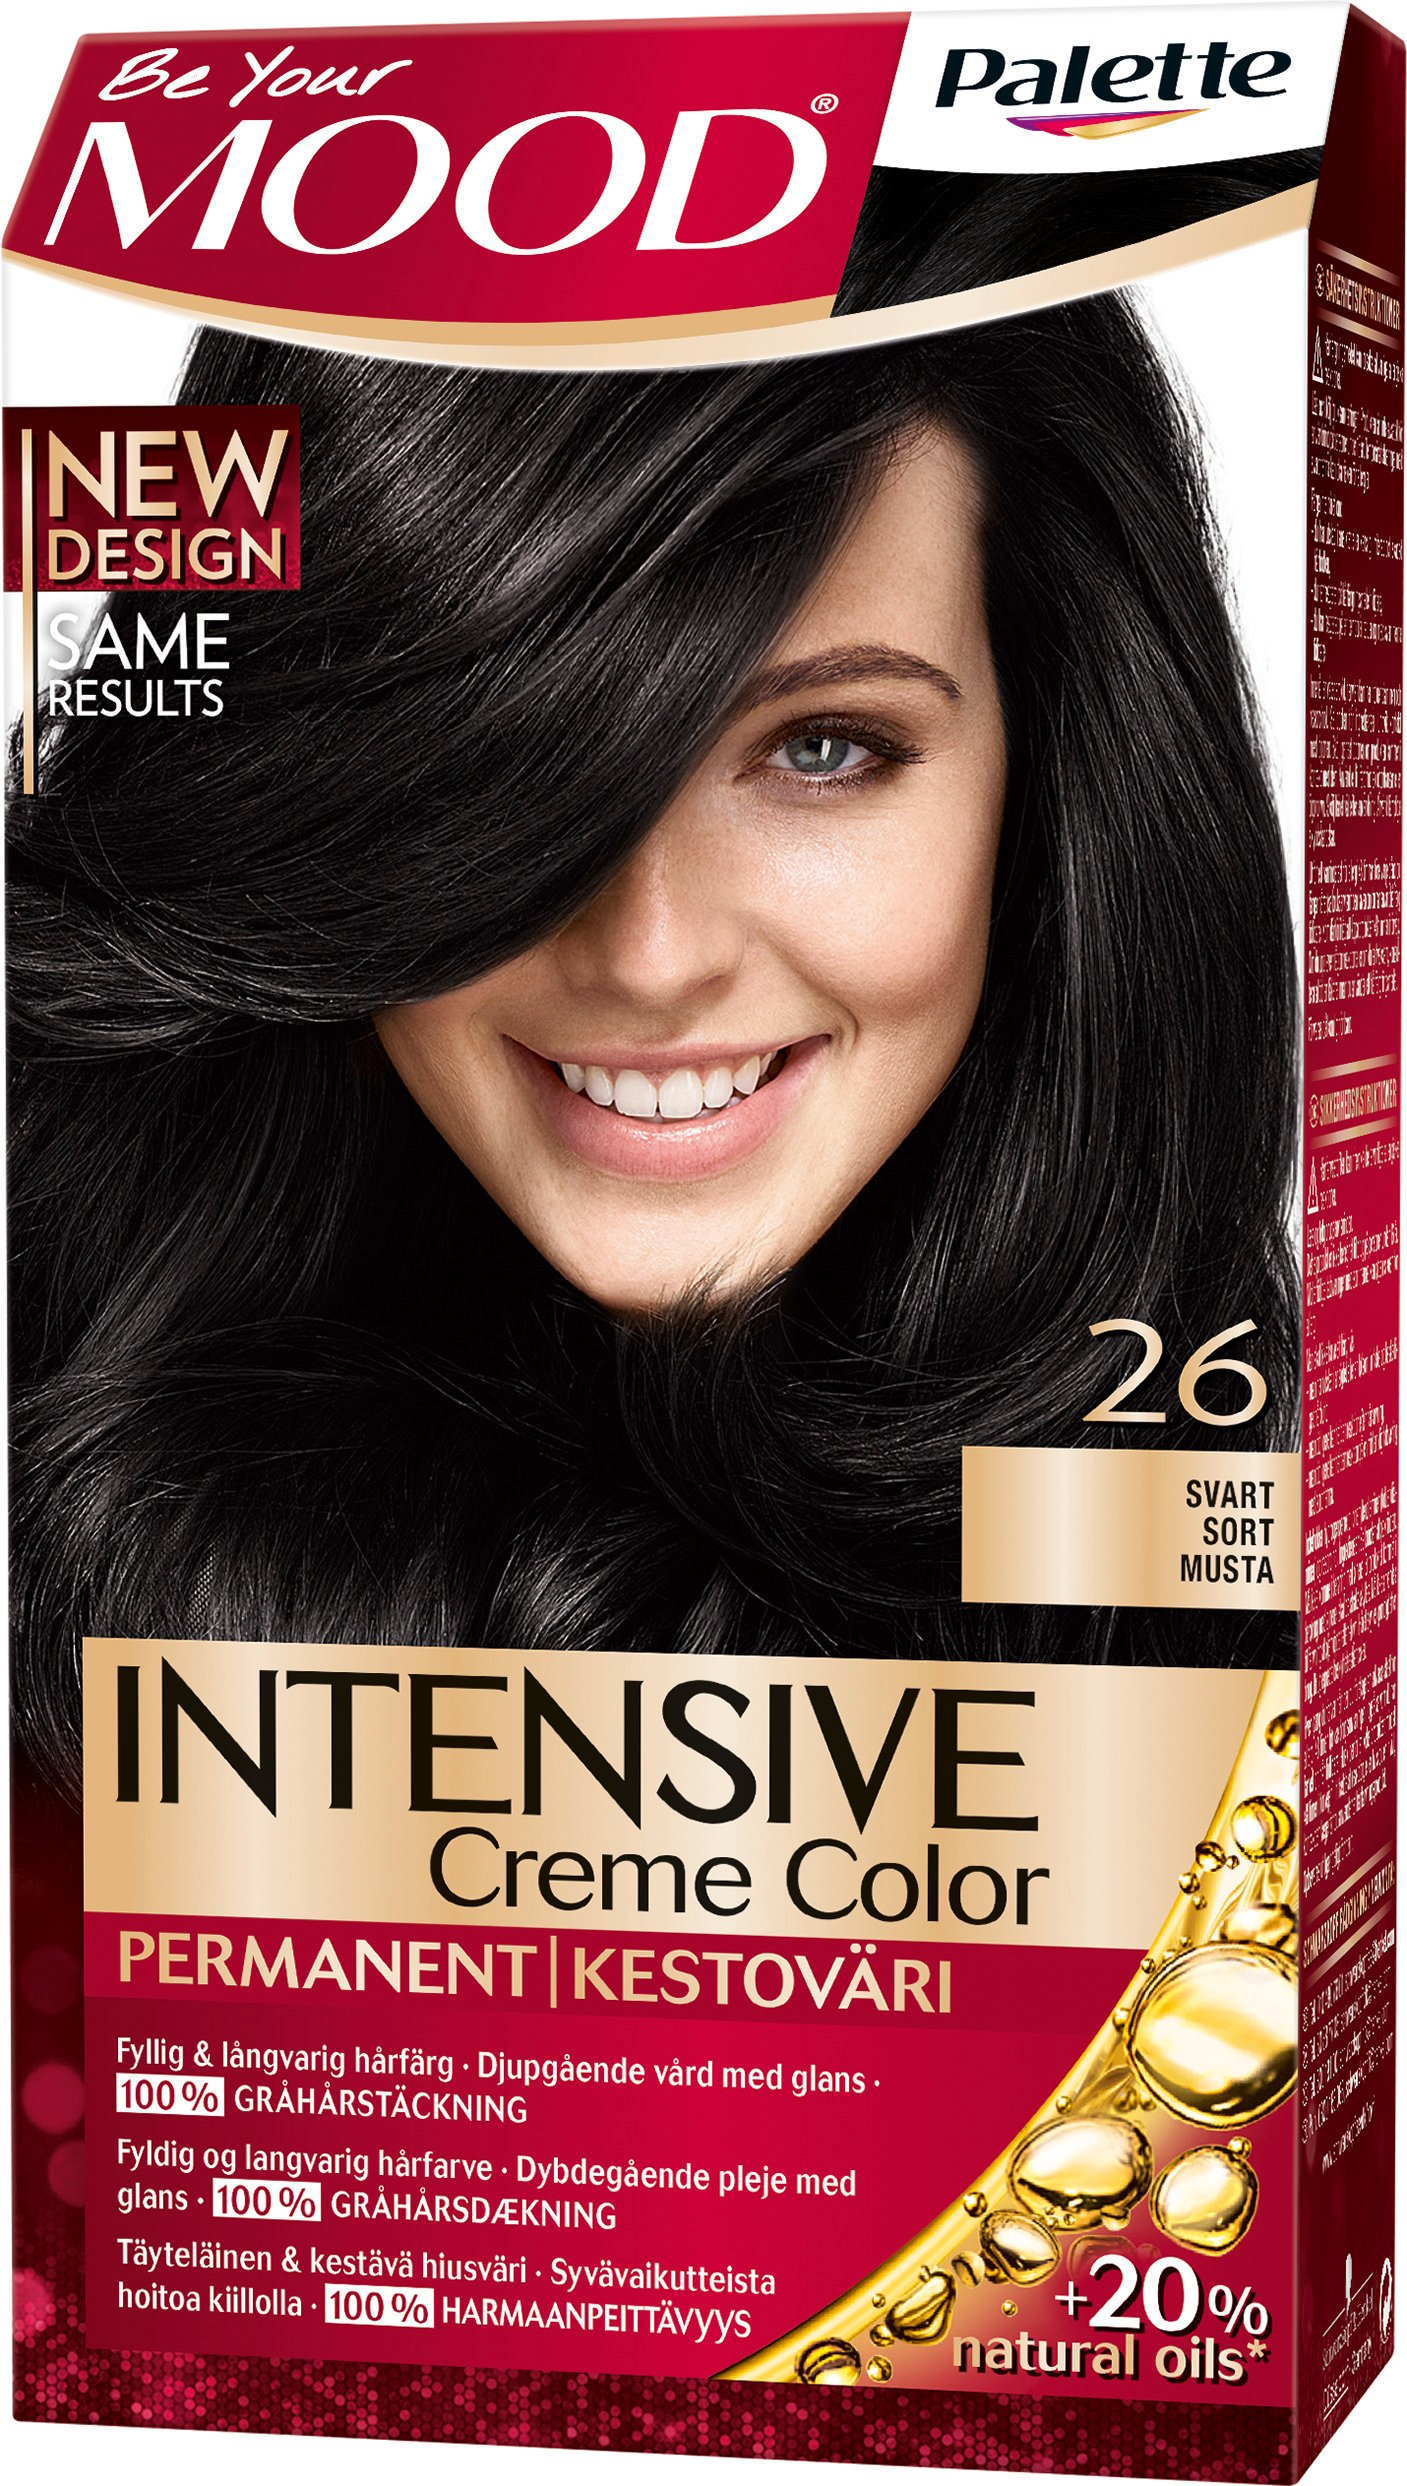 MOOD Palette Intensive Creme Color 26 Svart